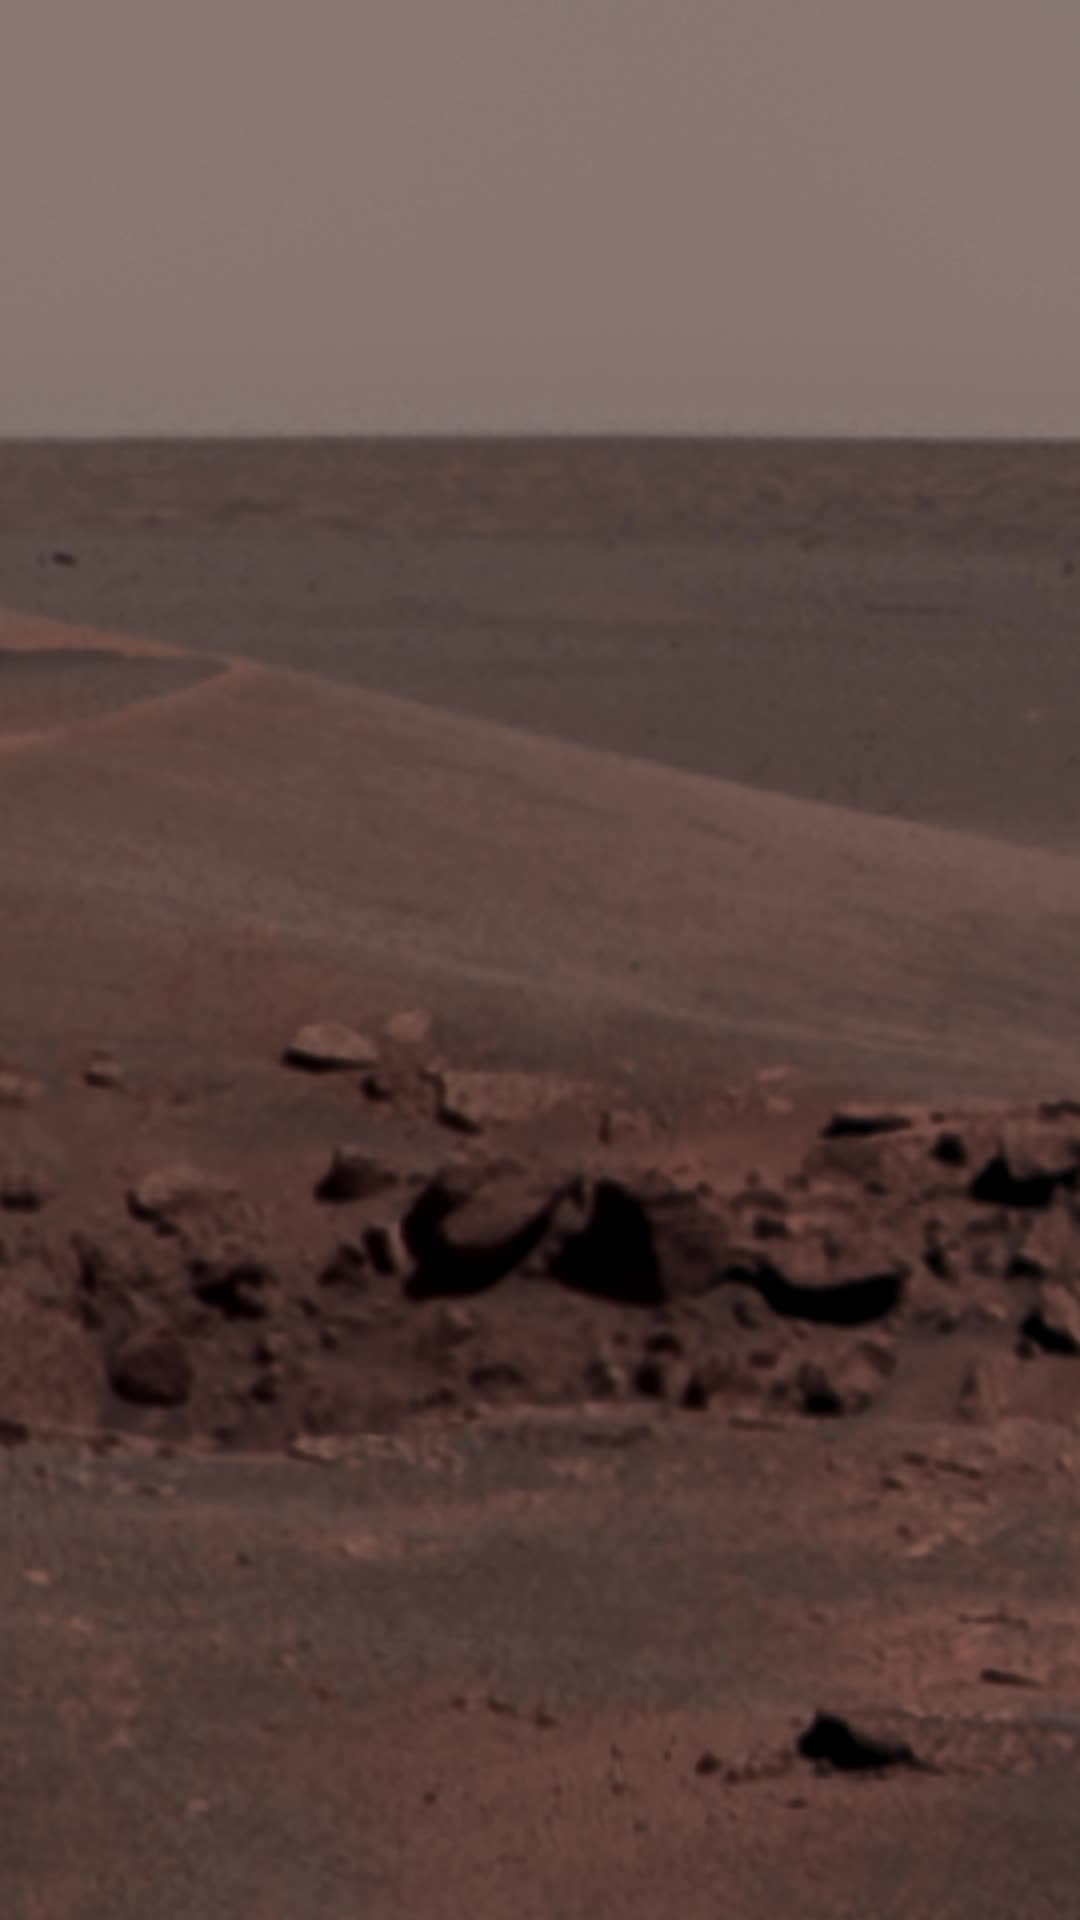 Som ET - 78 - Mars - Opportunity Sols 952-954